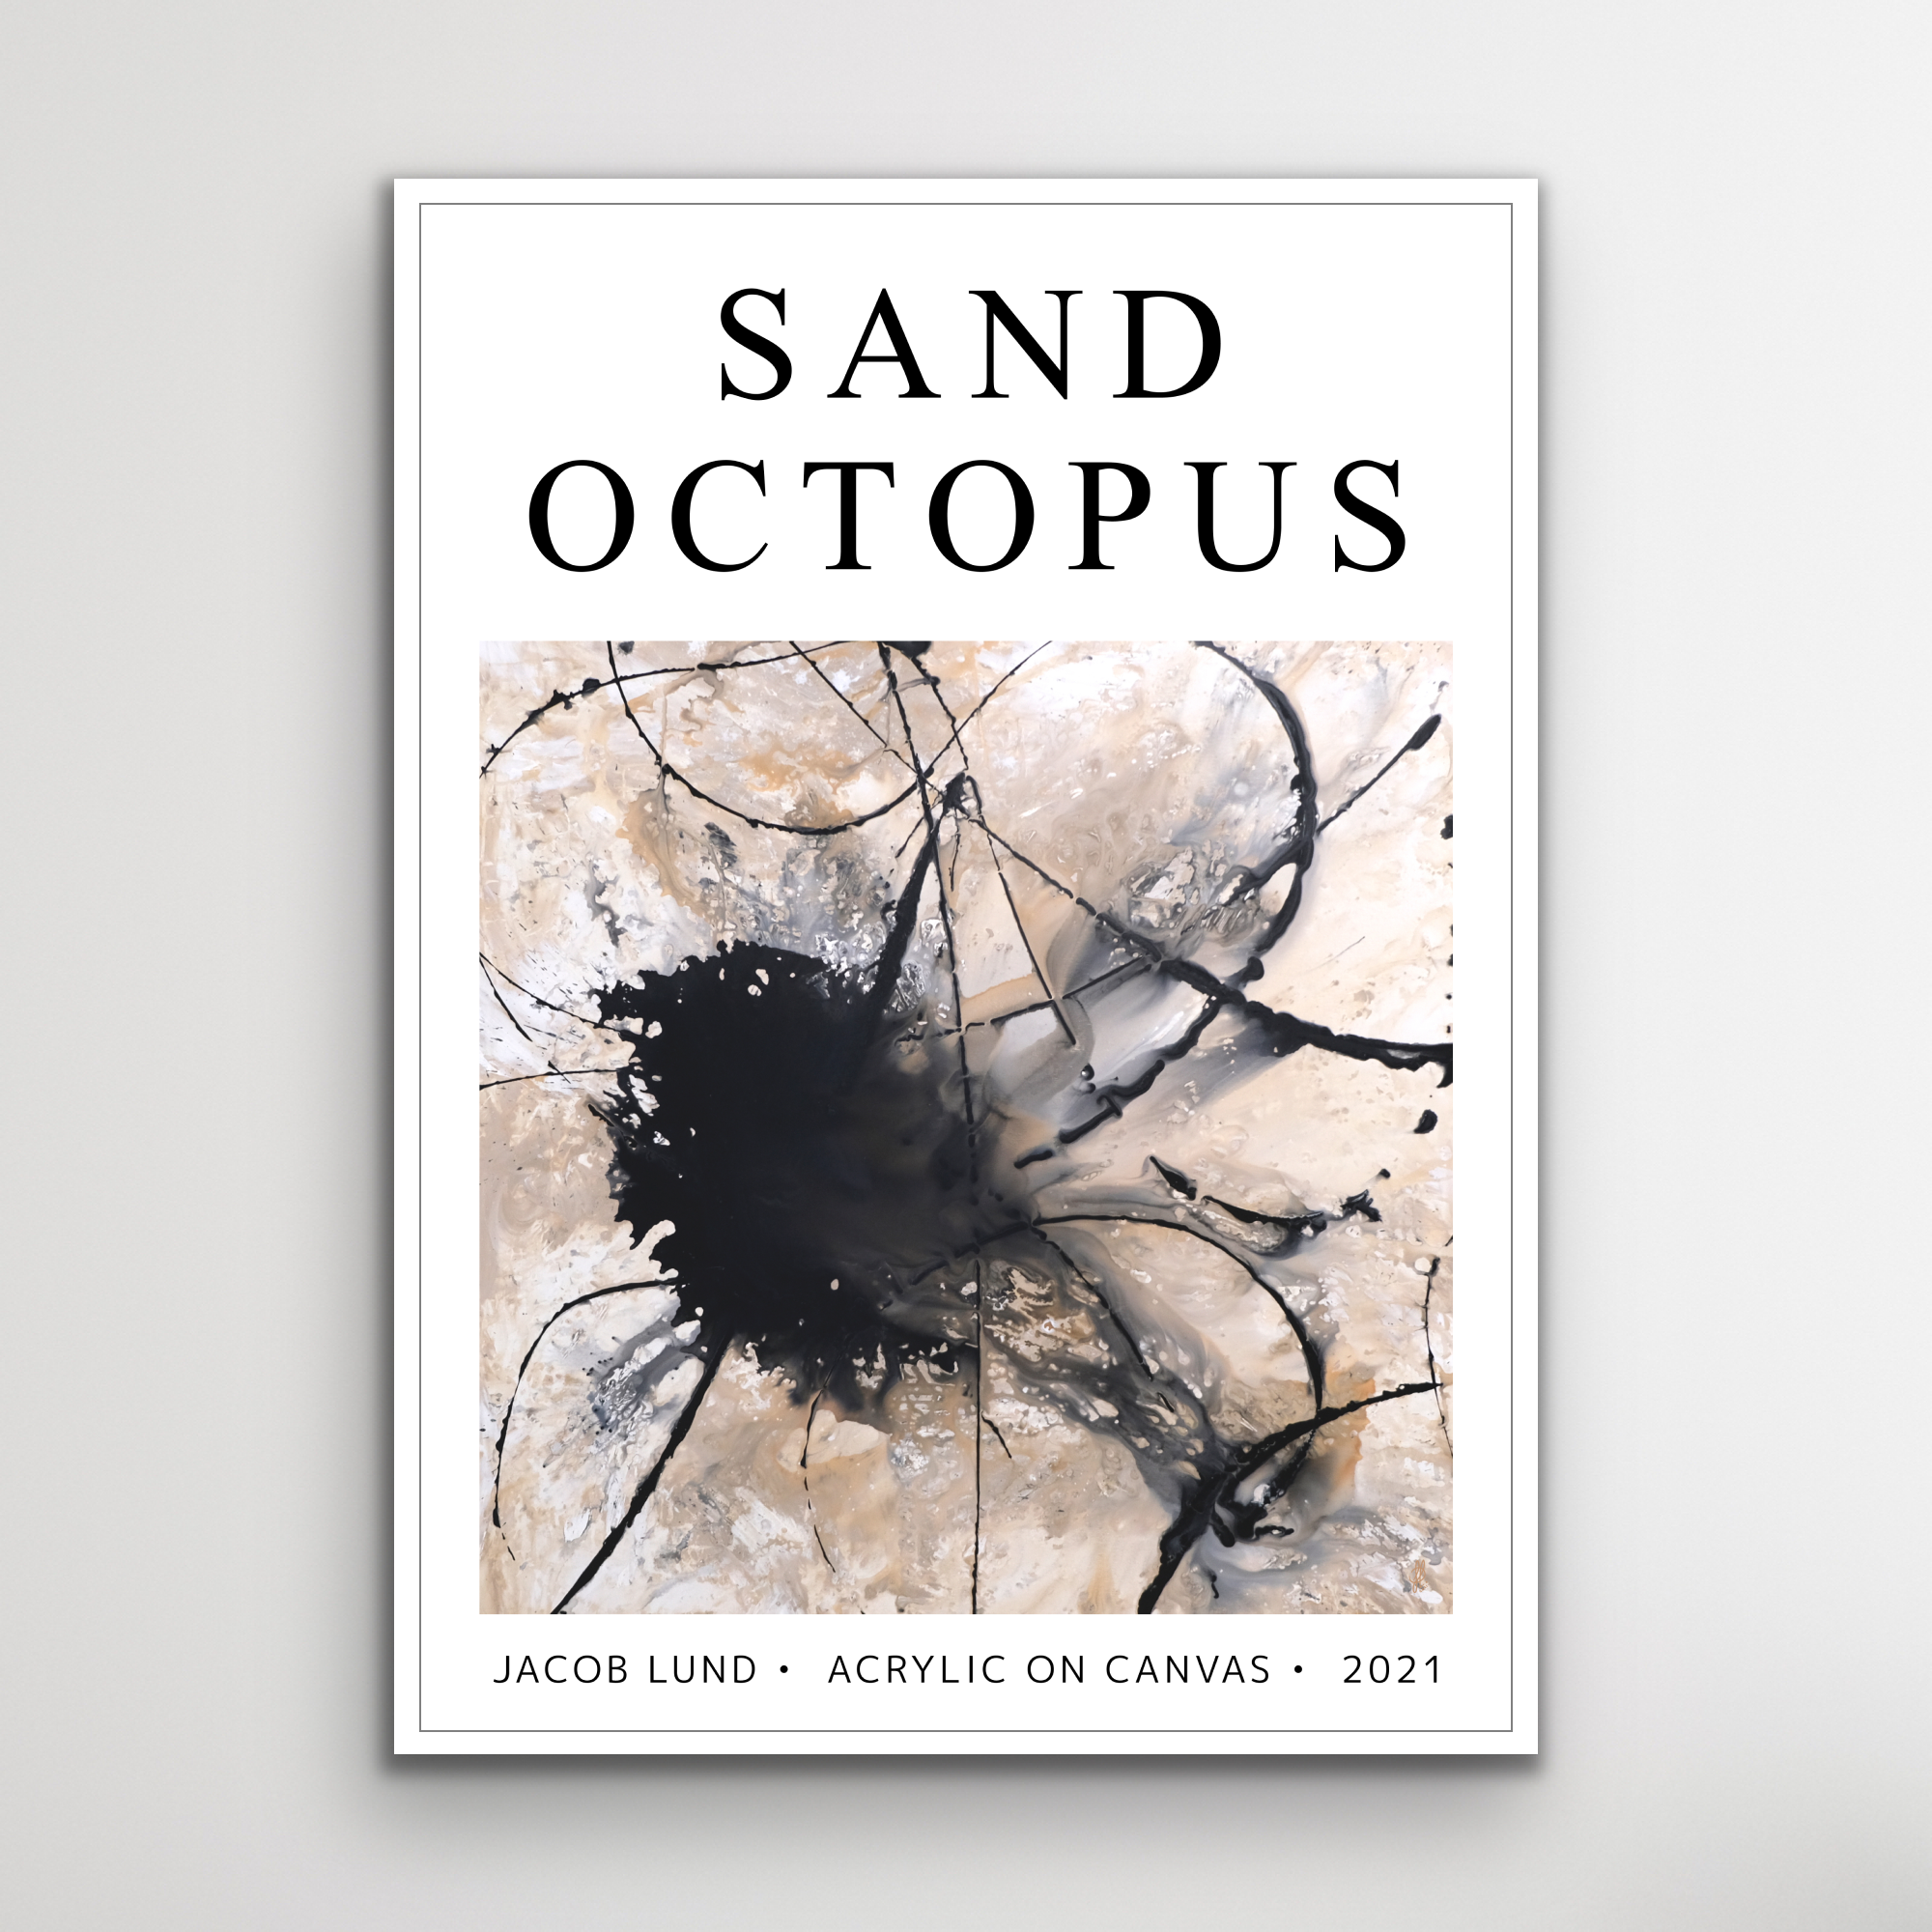 Plakat: "Sand Octopus" (weißer Hintergrund)